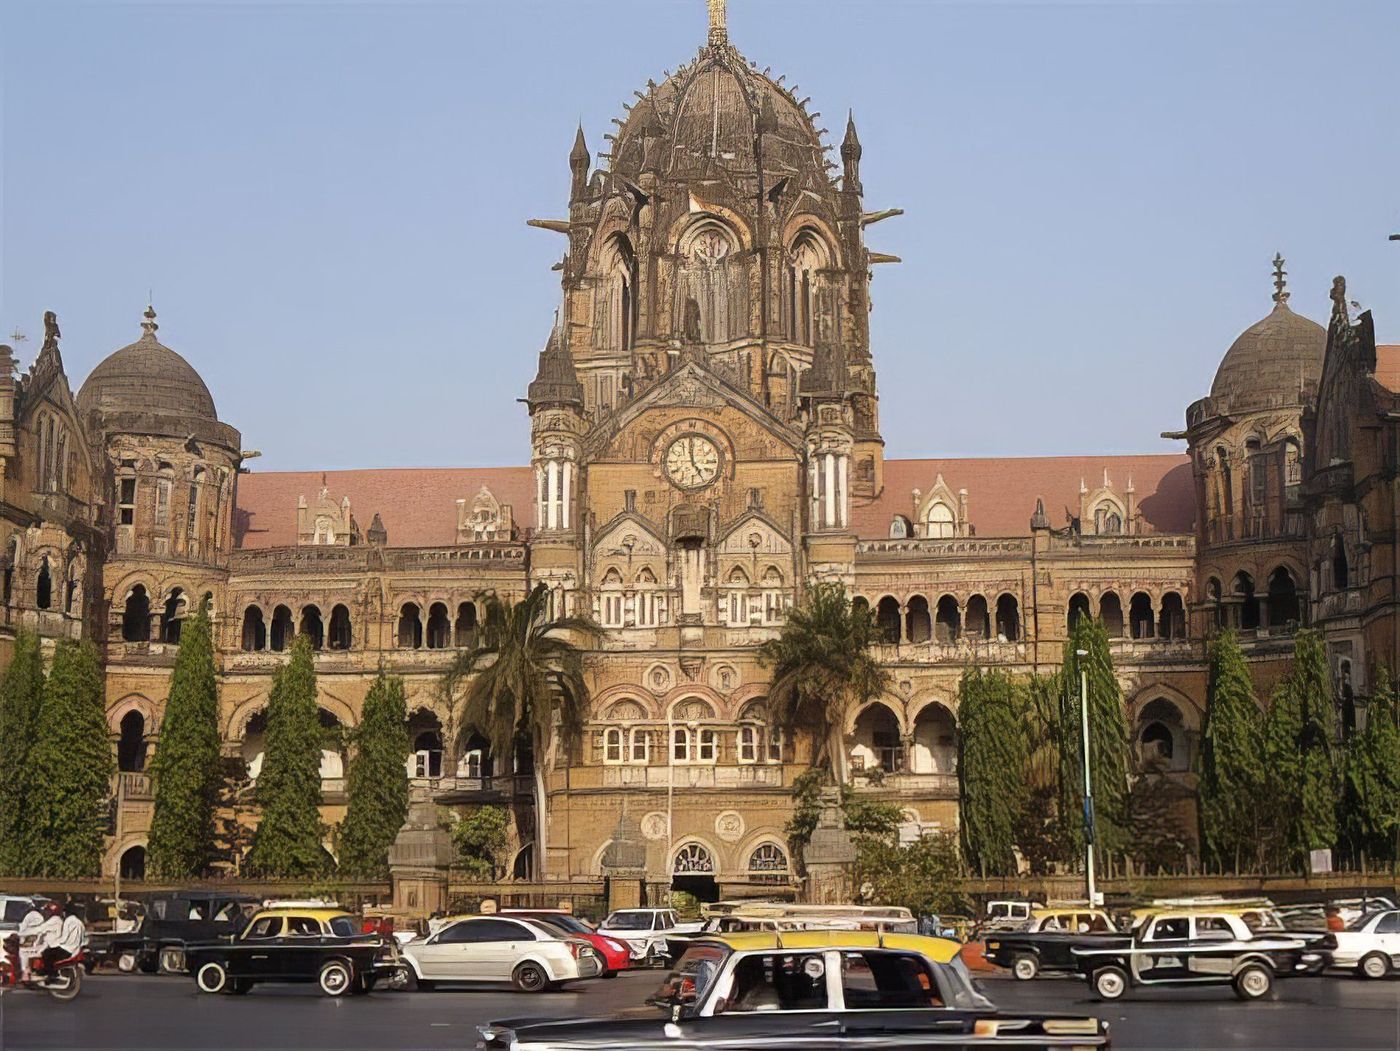 Victoria Station (Chhatrapati Shivaji)